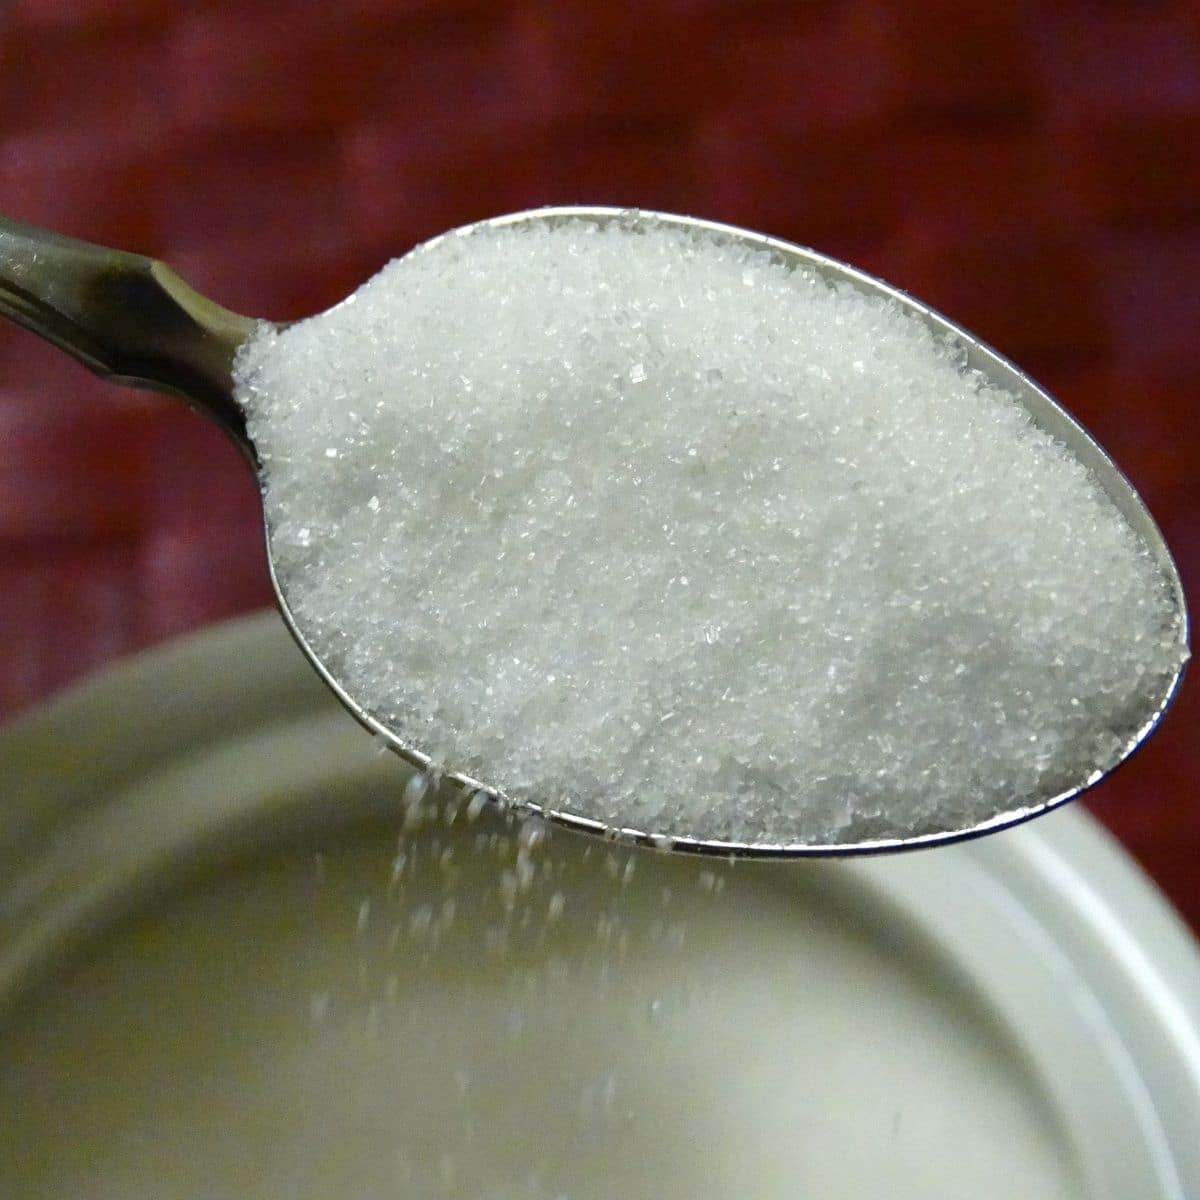 Lo zucchero viene espulso dal contenitore.